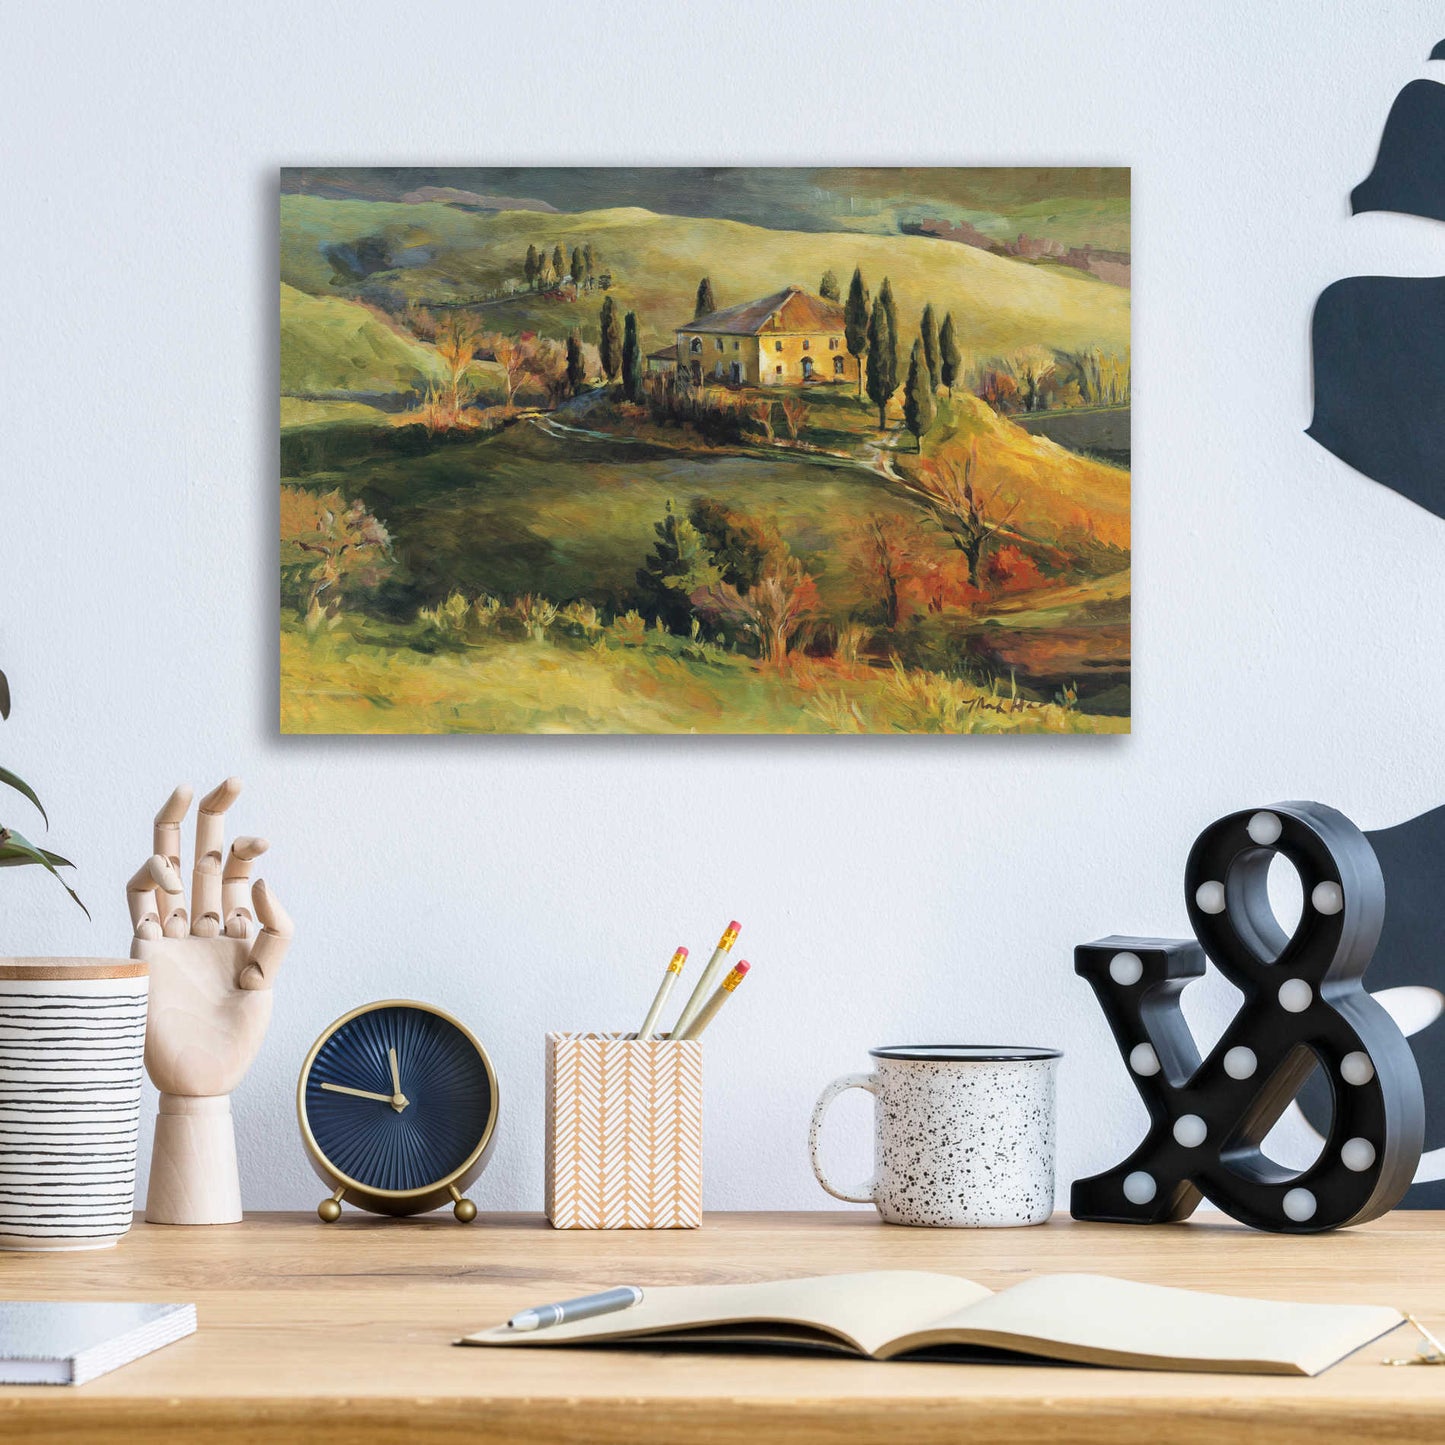 Epic Art 'Tuscan Hillside' by Marilyn Hageman, Acrylic Glass Wall Art,16x12